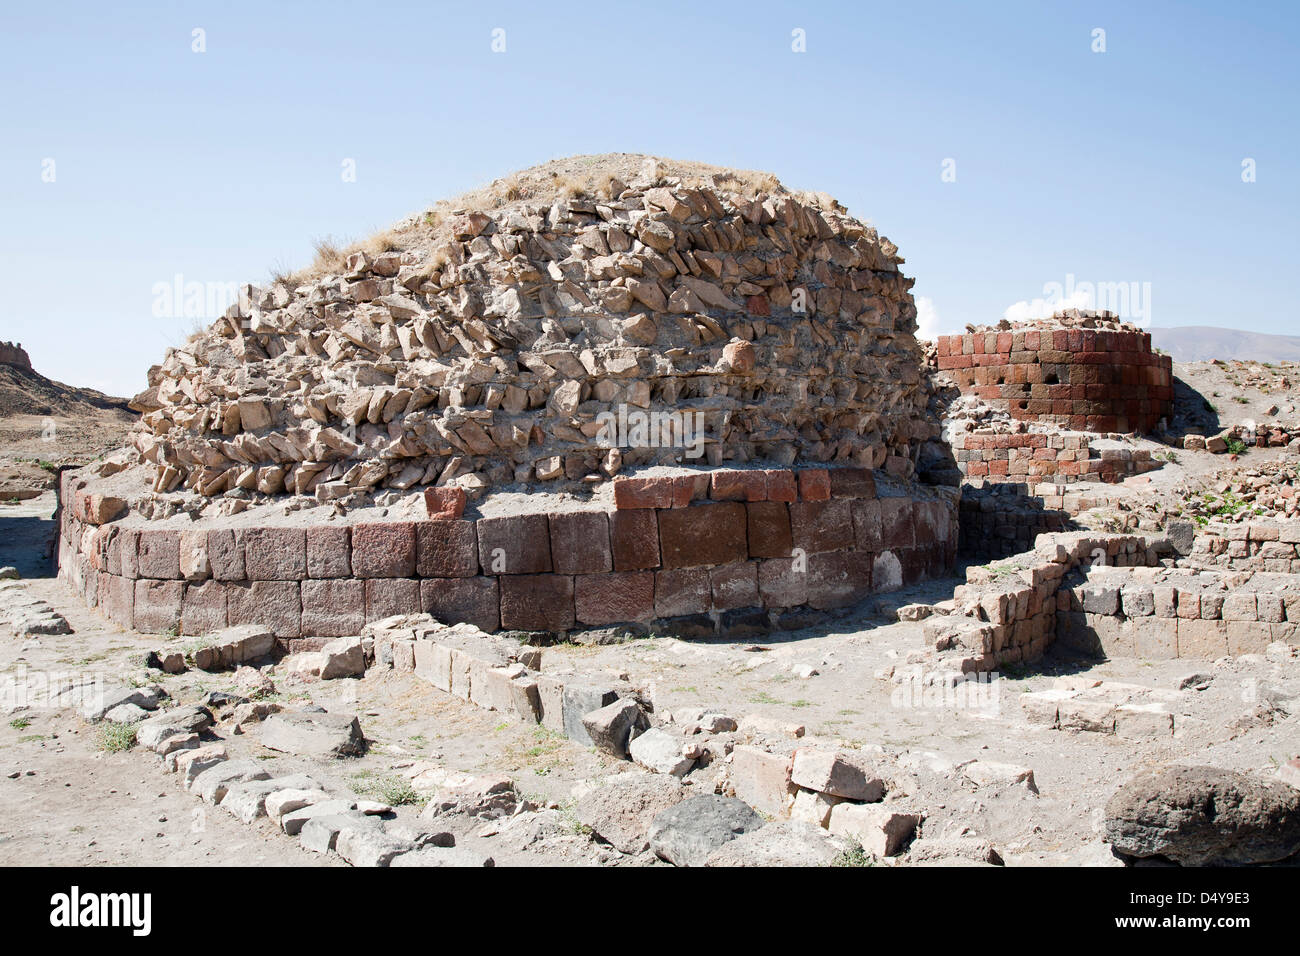 Ruinas de casas, ruinas de ani, Kars, zona noreste de Anatolia, Turquía, Asia Foto de stock